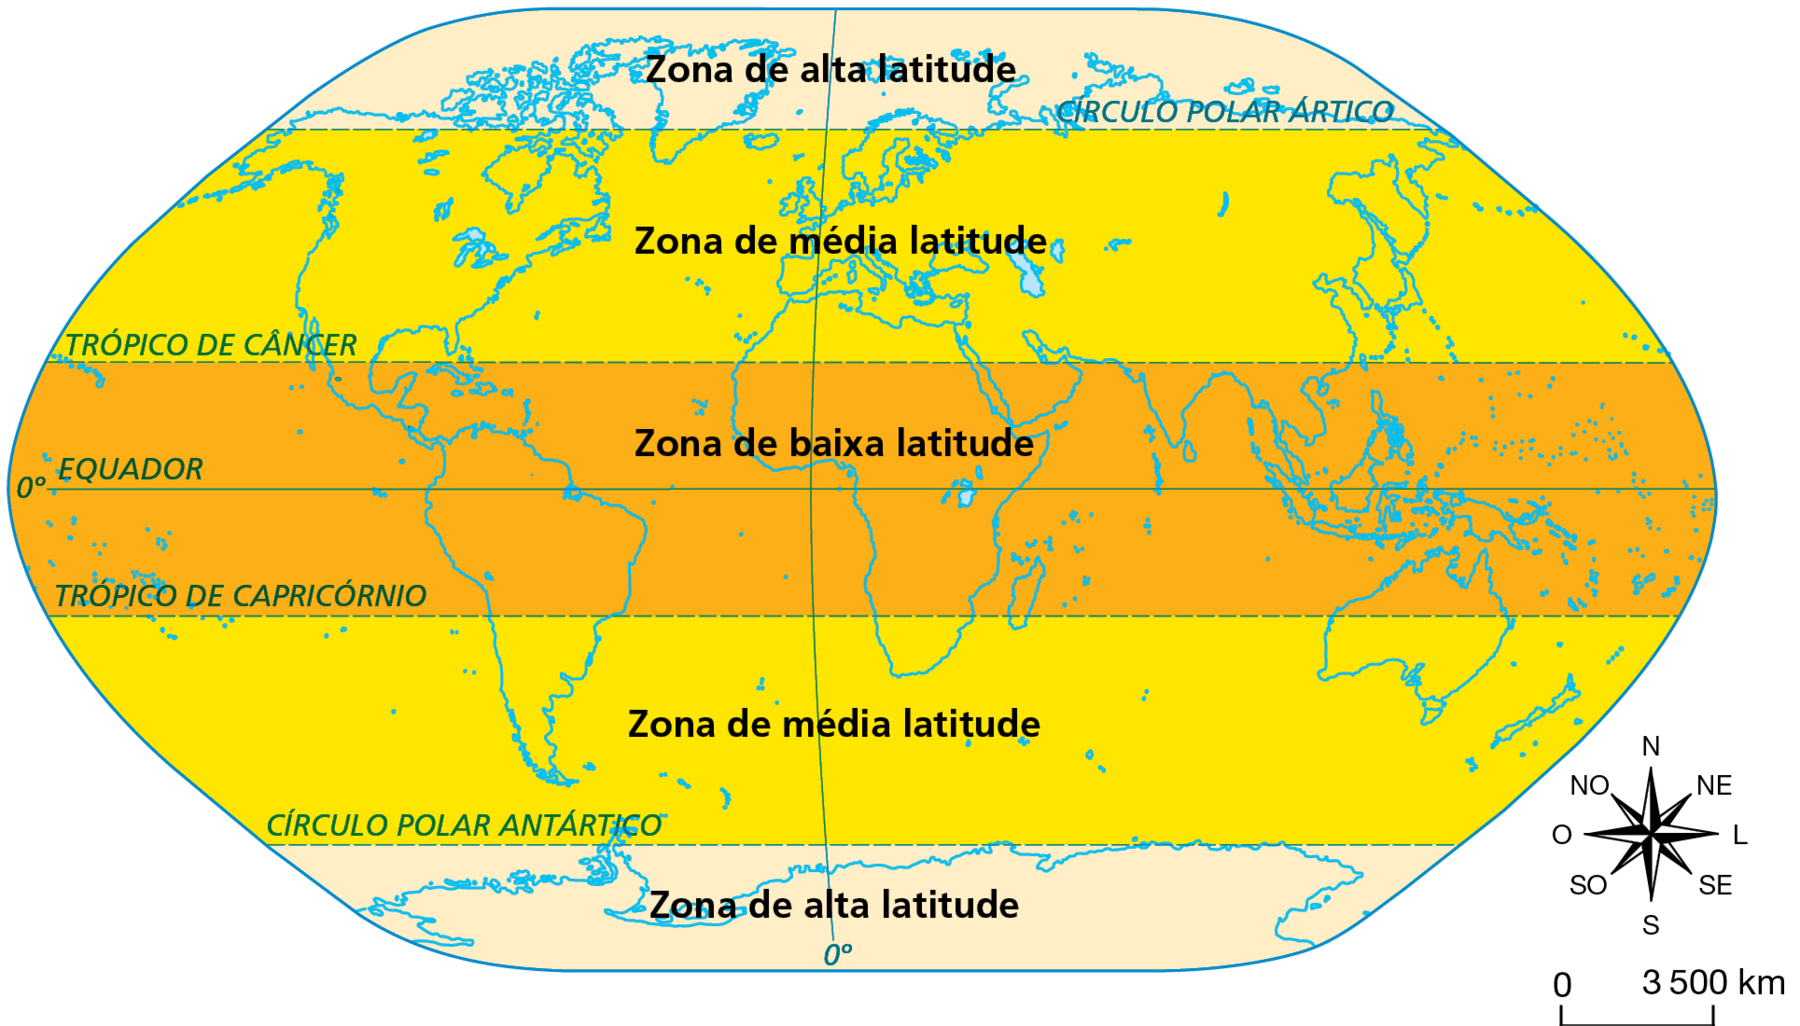 Mapa. Zonas de alta, média e baixa latitudes. Planisfério com a delimitação das zonas de alta, média e baixa latitudes: zona de alta latitude: entre o Círculo Polar Ártico e o Polo Norte; zona de média latitude: entre o Círculo Polar Ártico e o Trópico de Câncer; zona de baixa latitude: entre o Trópico de Câncer e o Trópico de Capricórnio; zona de média latitude: entre o Trópico de Capricórnio e o Círculo Polar Antártico; zona de alta latitude: entre o Círculo Polar Antártico e o Polo Sul. 
Abaixo, rosa dos ventos e escala de 0 a 3.500 quilômetros.